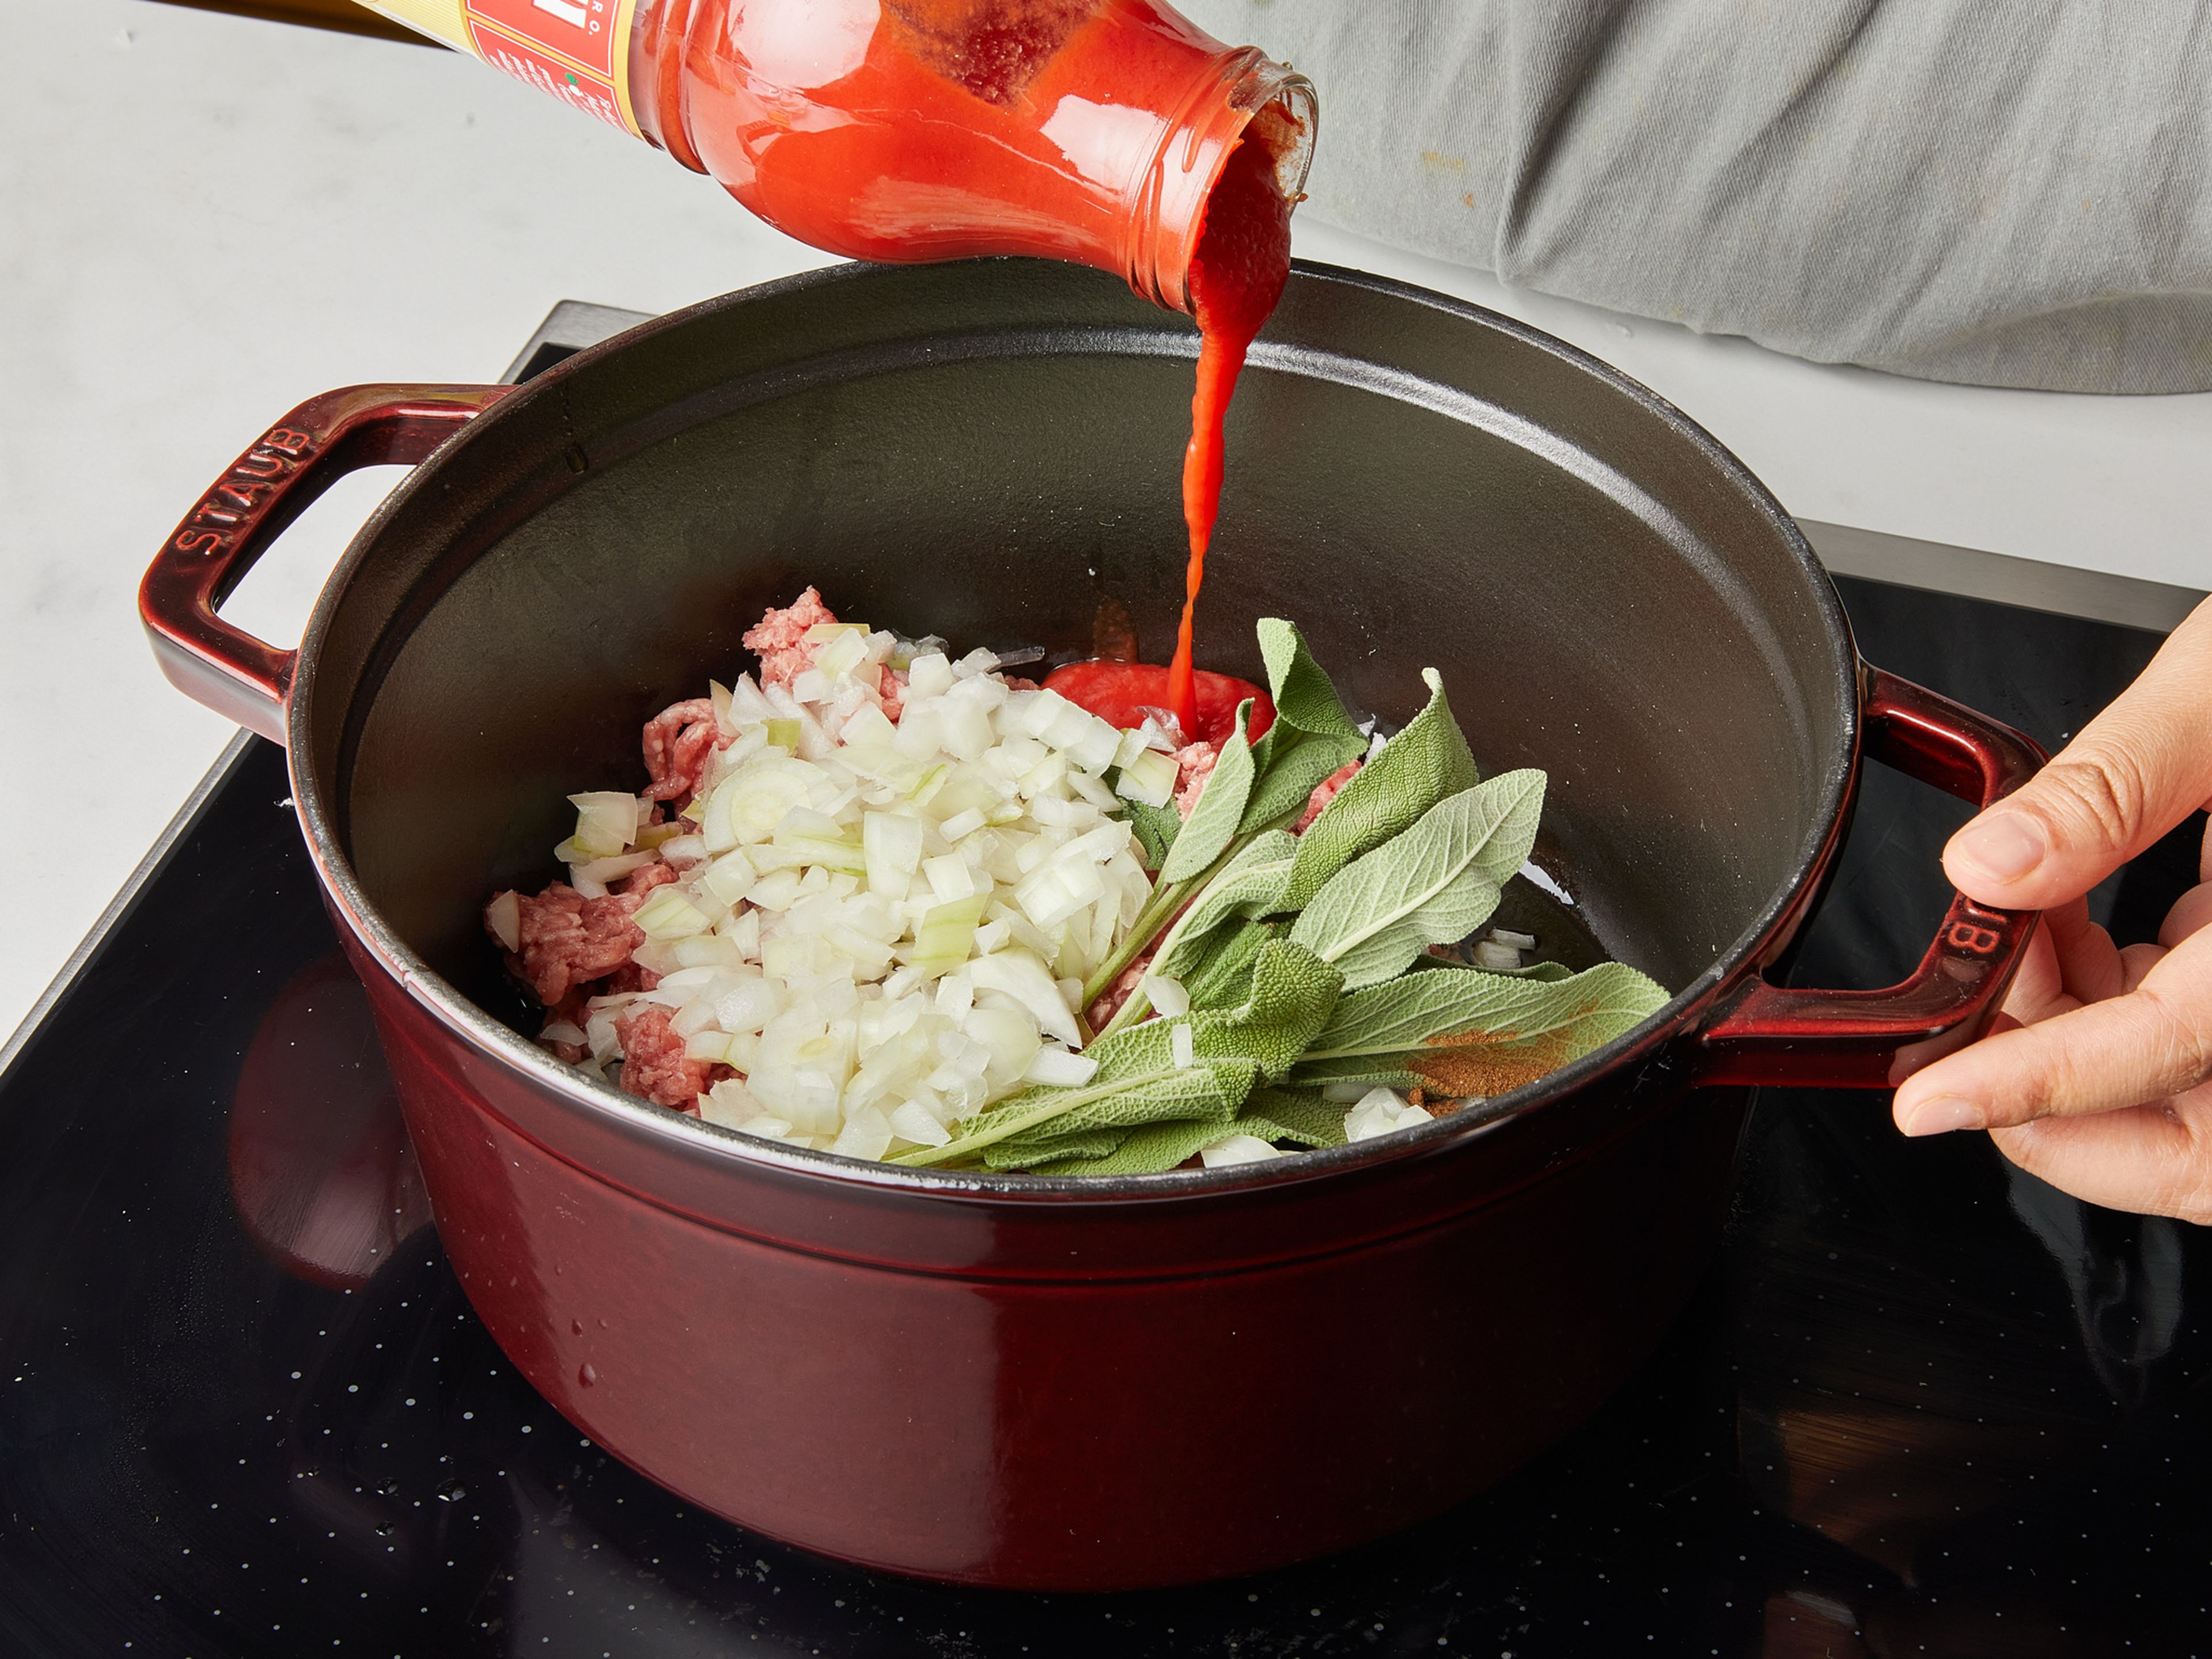 Beginne zuerst mit der Soße. Bedecke den Boden eines kalten (!) großen Topfes großzügig mit Olivenöl. Hackfleisch, Lorbeerblatt, Rosmarin, Thymian und Salbei hinzugeben, sowie Piment, falls du welchen verwendest. Zwiebel fein würfeln und ebenfalls dazugeben. Mit passierten Tomaten auffüllen und mit Salz und Pfeffer würzen. Dann den Topf auf den Herd stellen und zugedeckt bei mittlerer Hitze ca. 30 Min. köcheln lassen. Zwischendurch gelegentlich umrühren.